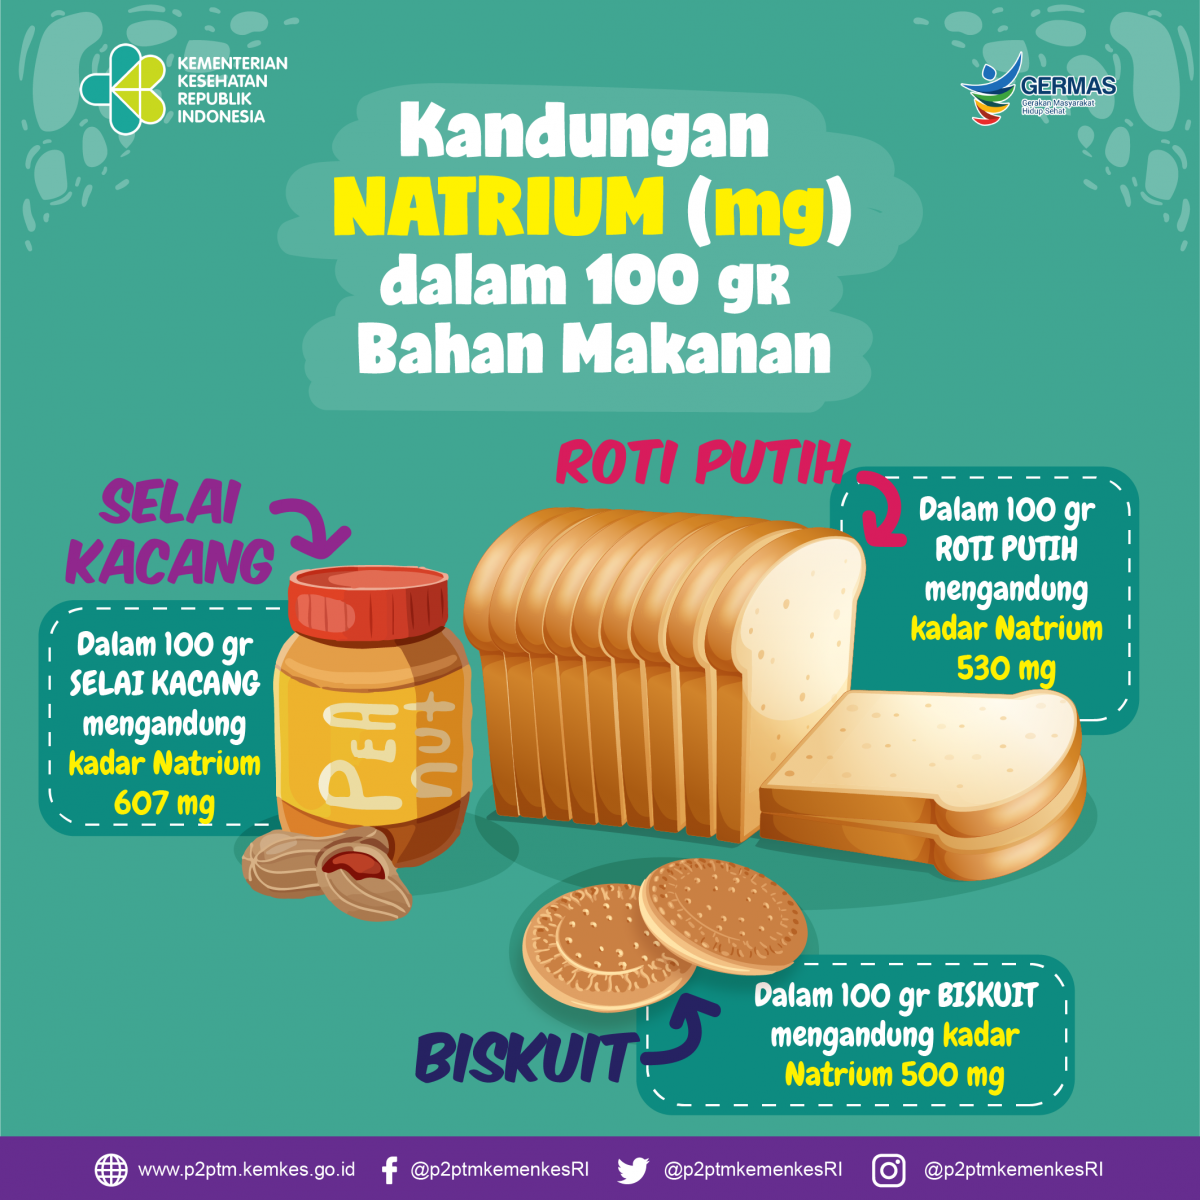 Kandungan Natrium (mg) dalam 100 gr bahan selai kacang, roti putih dan biskuit